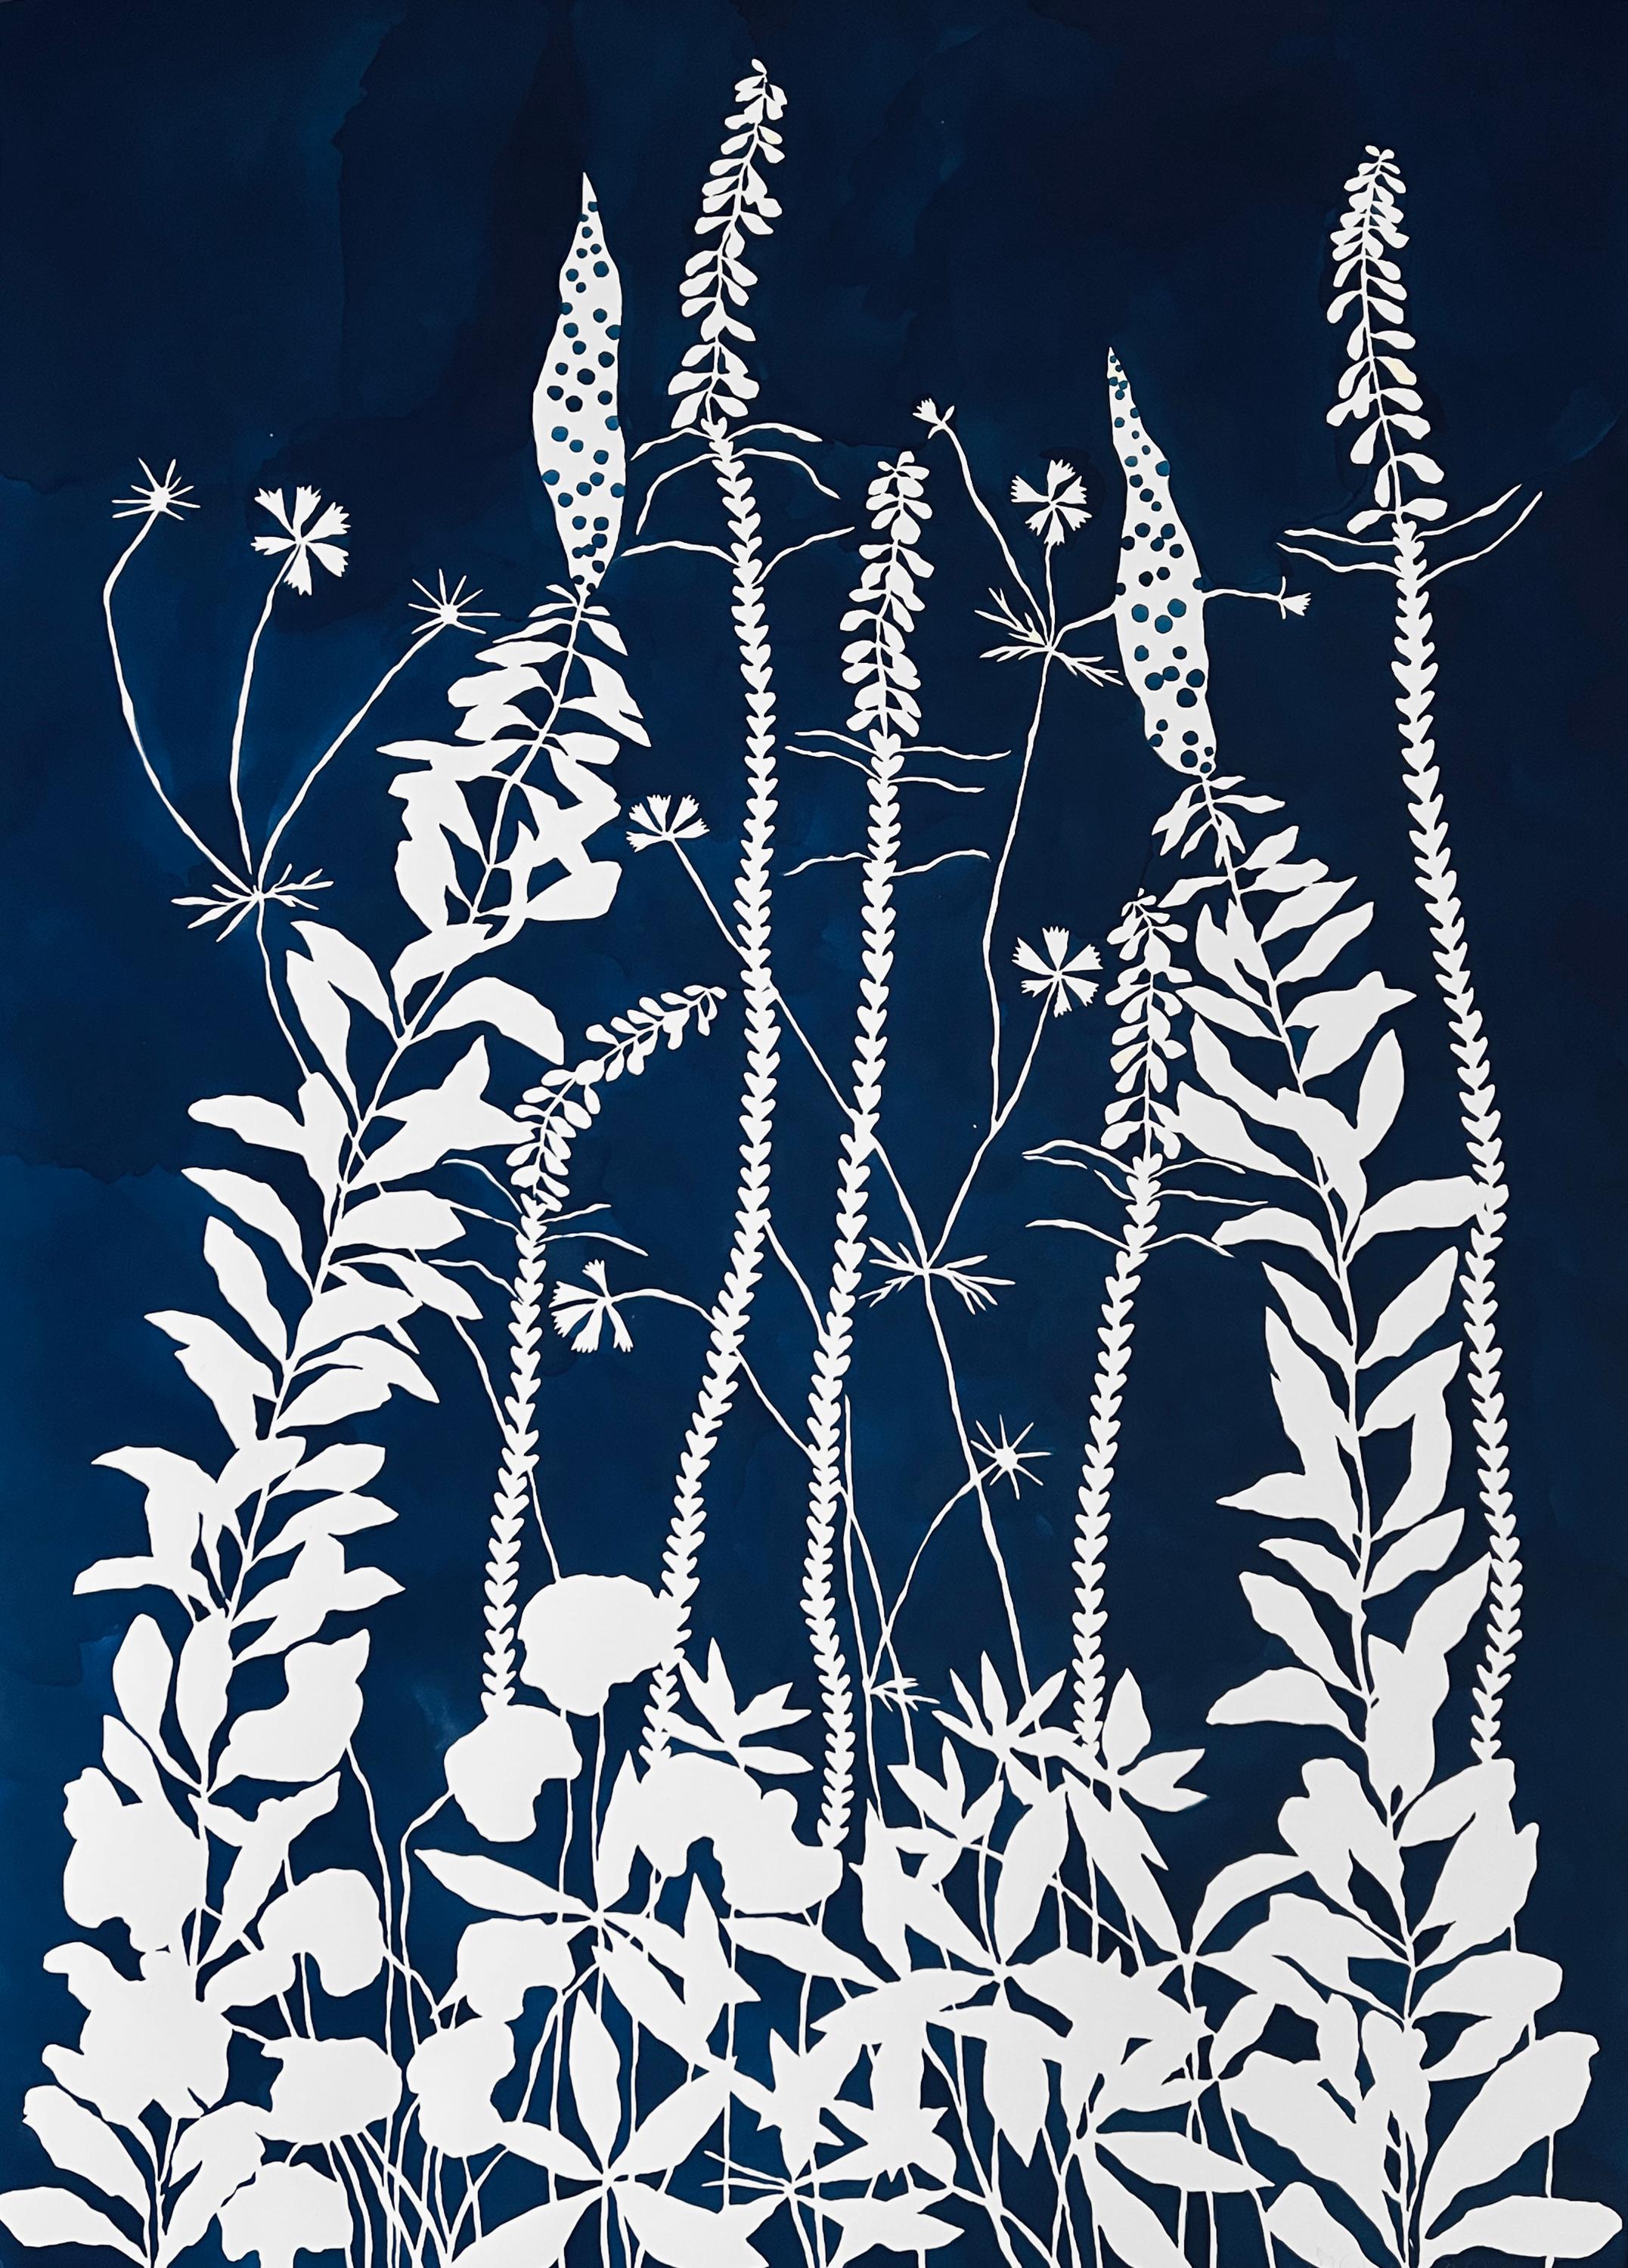 Abstract Painting Susan Hable - « Lapis Wildness », graphique, botanique, bicolore, bleu foncé, fleurs